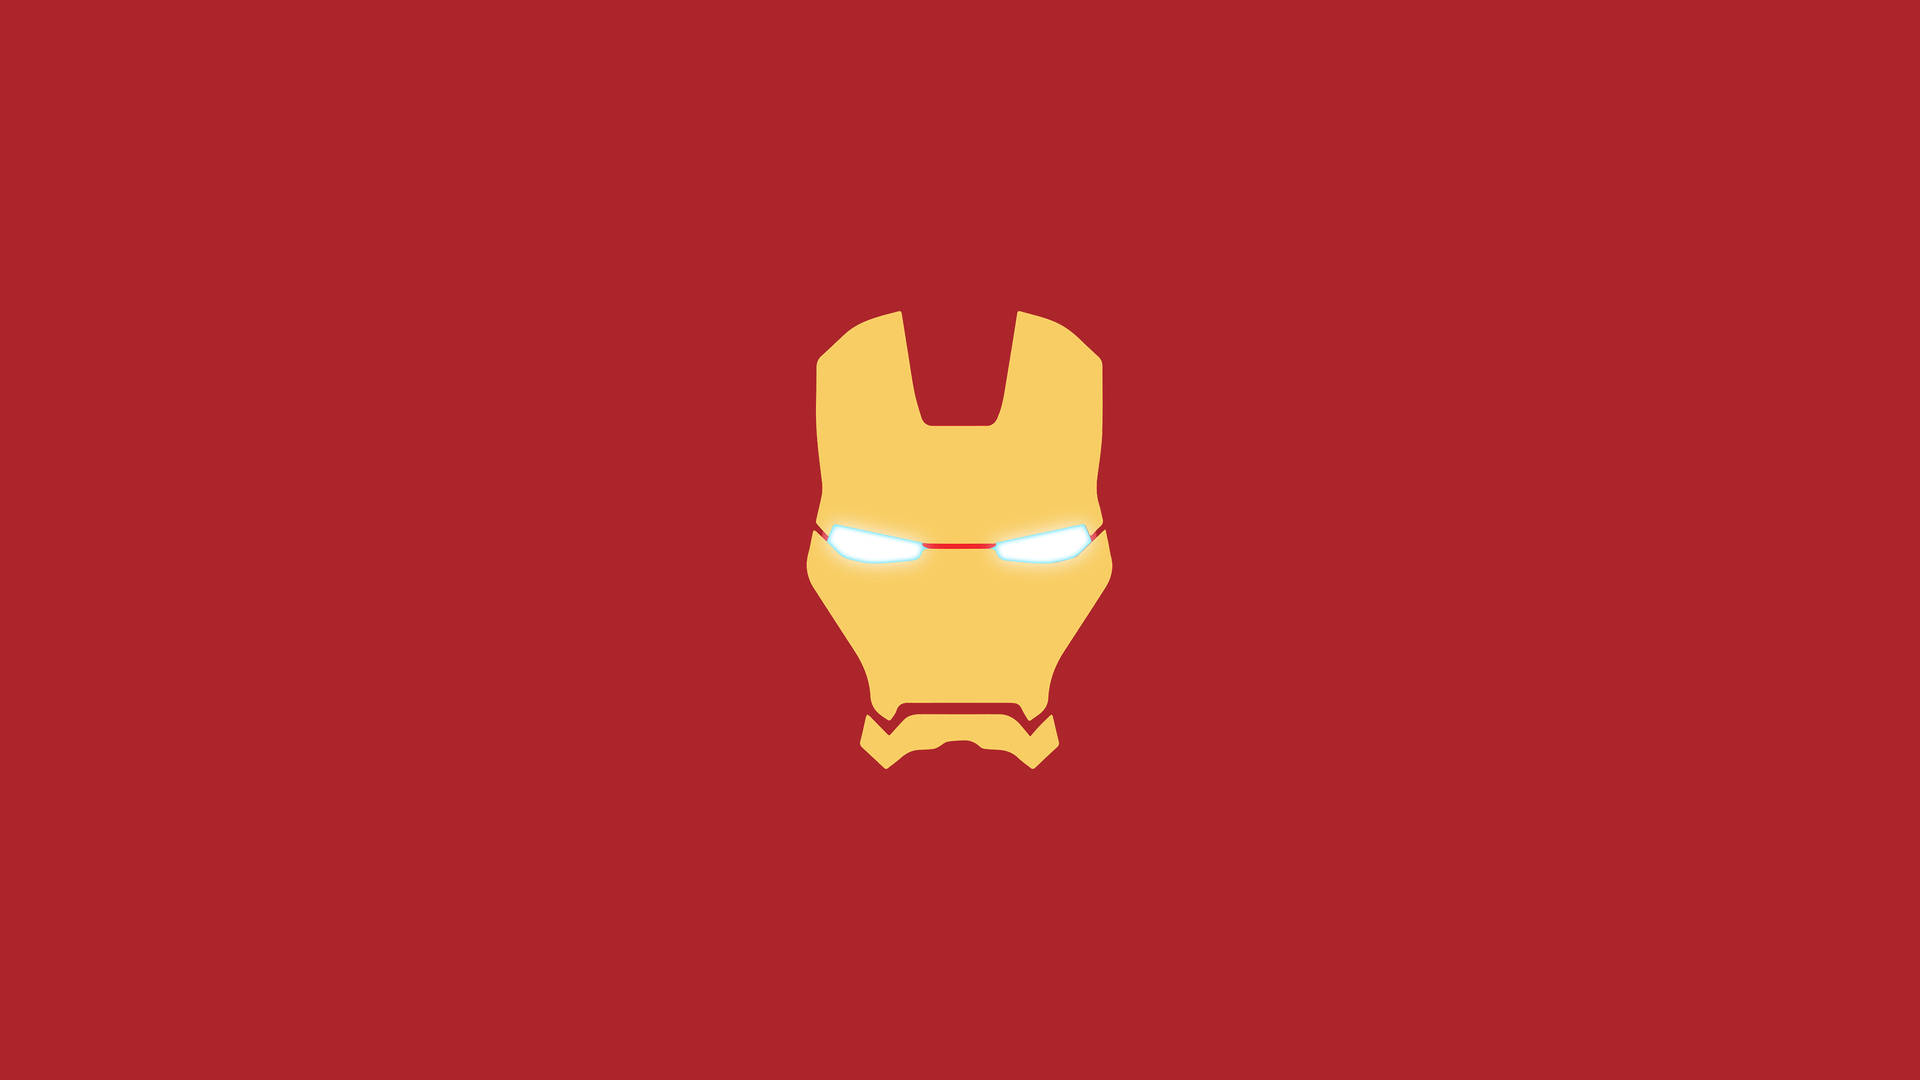 Iron Man Logo PNG Images, Transparent Iron Man Logo Image Download - PNGitem